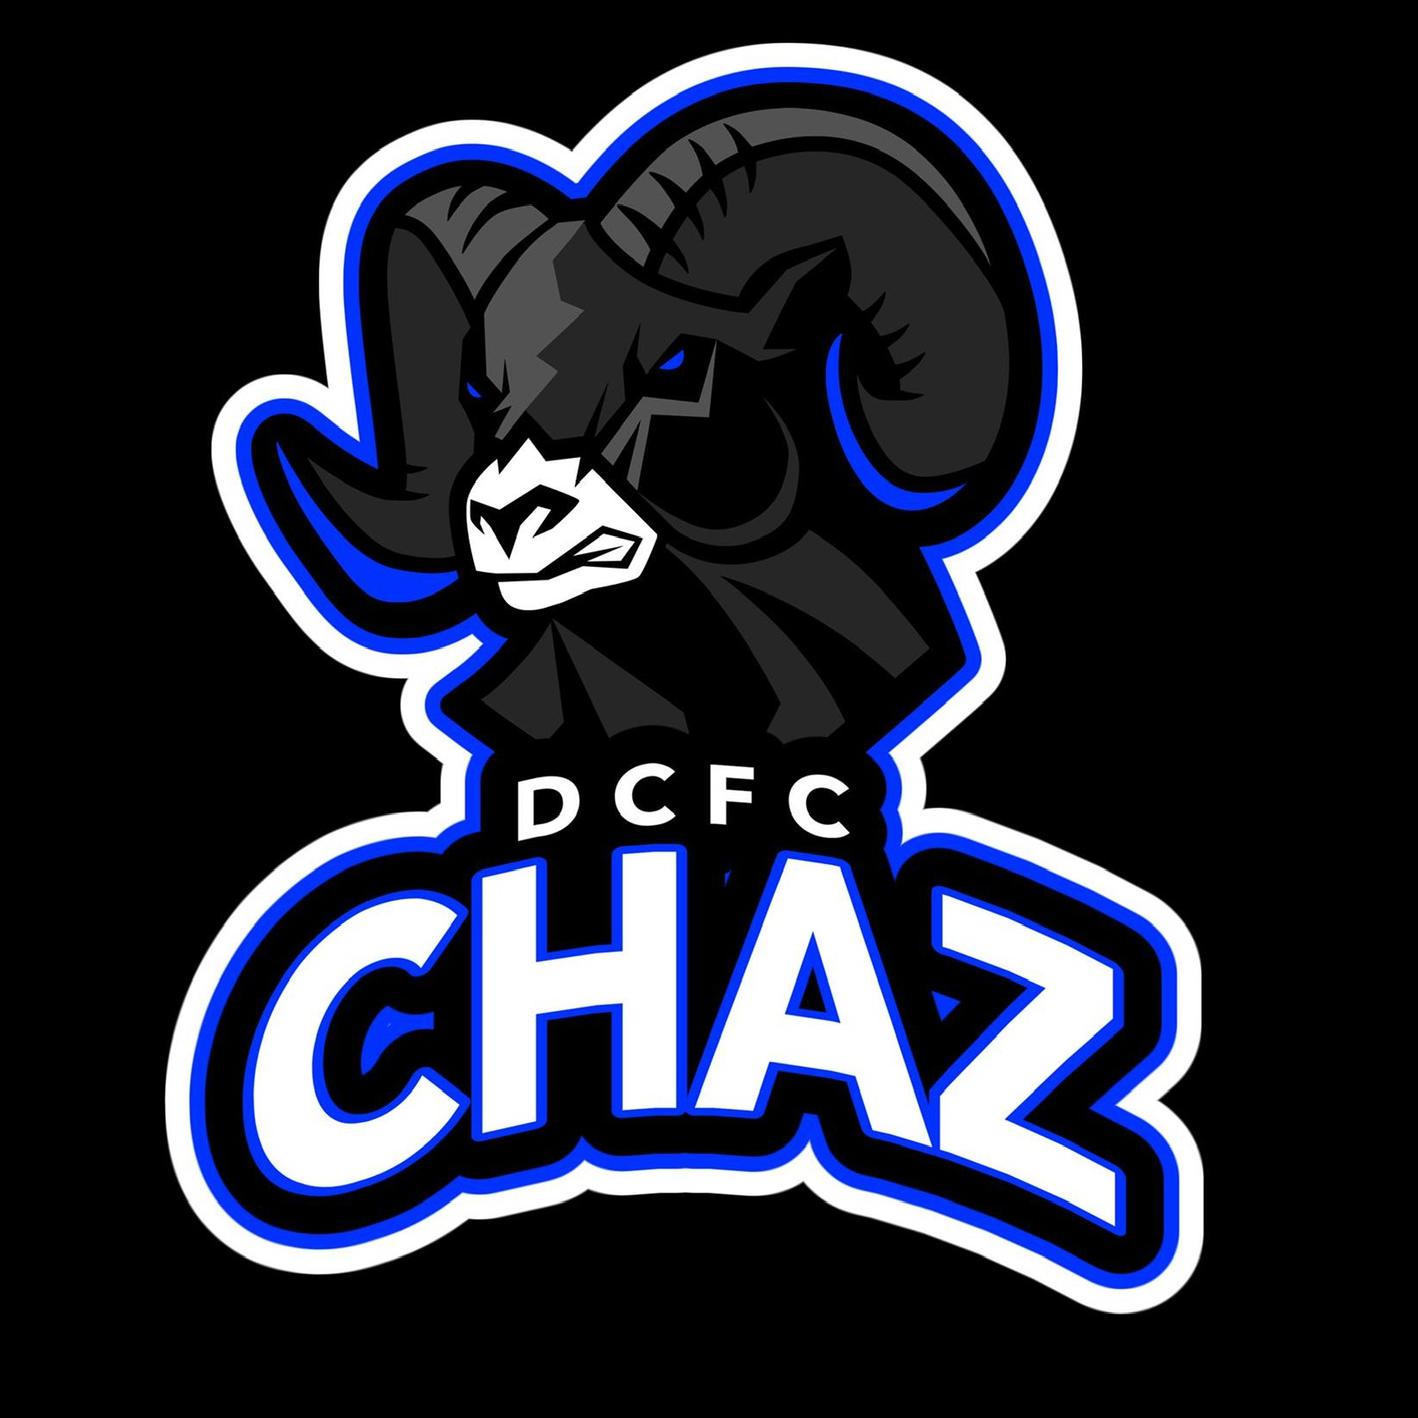 ChazDCFC